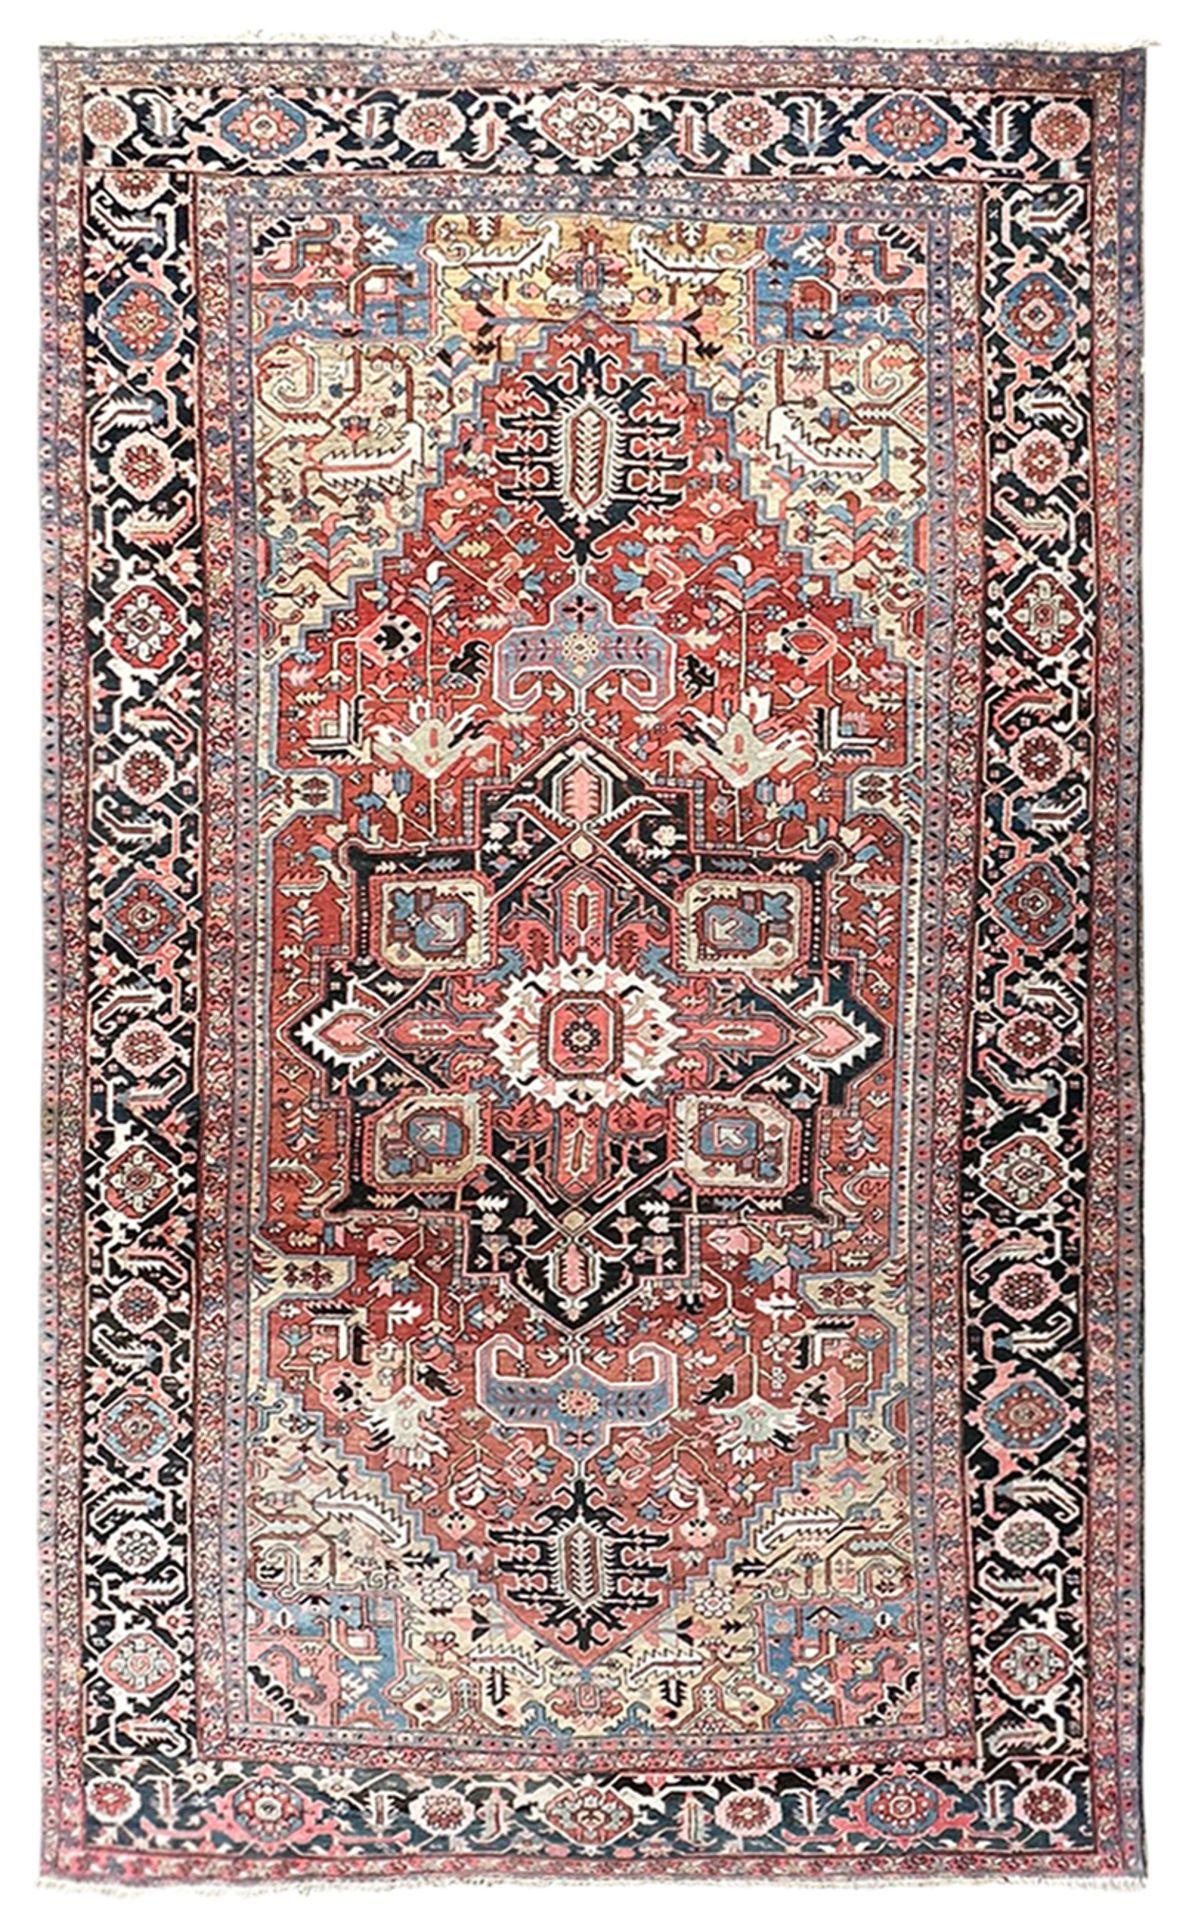 Heriz. Palace carpet. Oversize. Circa 1900.